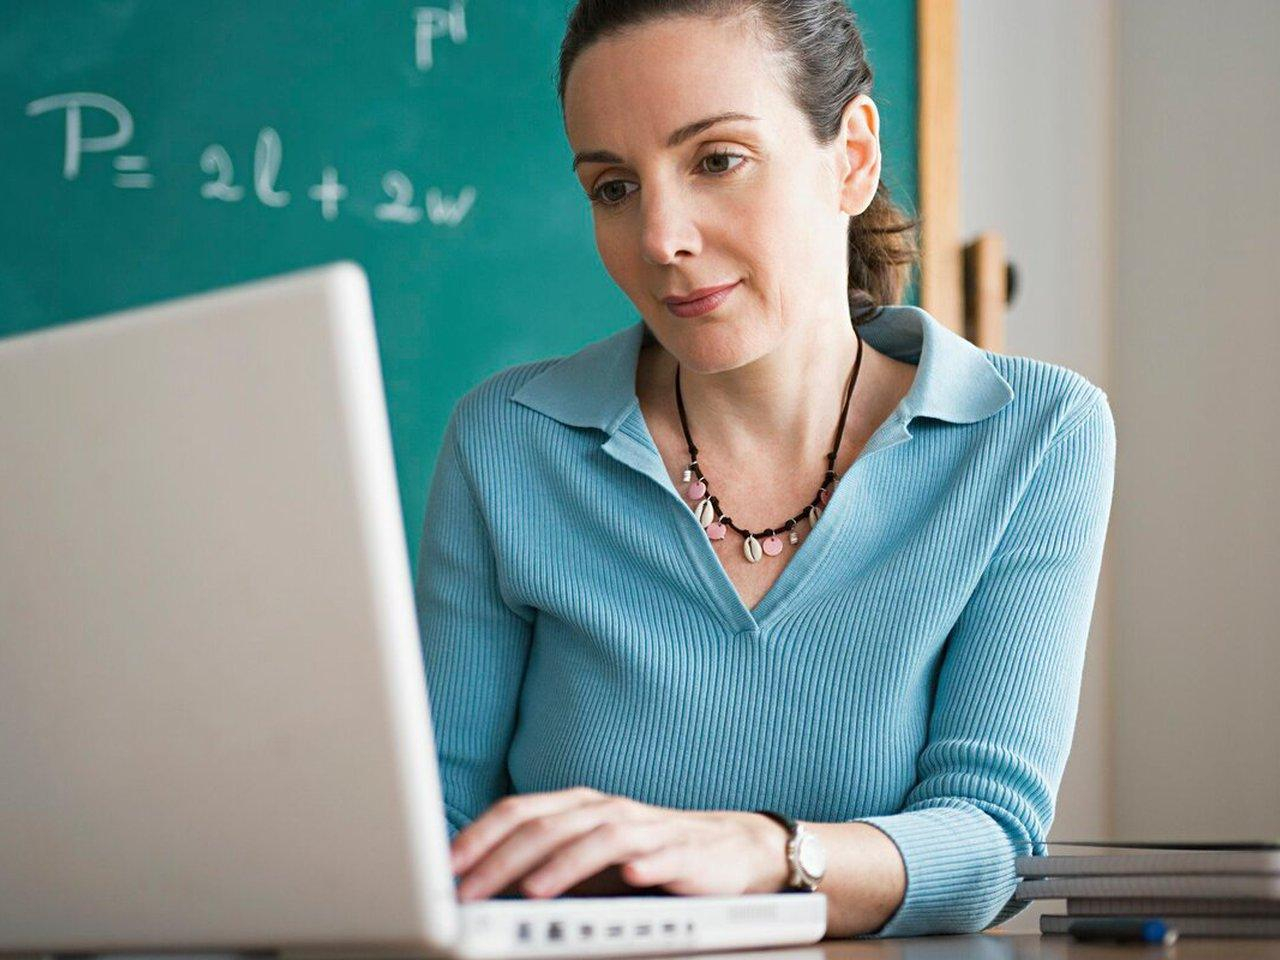 Вчителі 8 областей вже отримали ноутбуки для роботи: перелік - Освіта